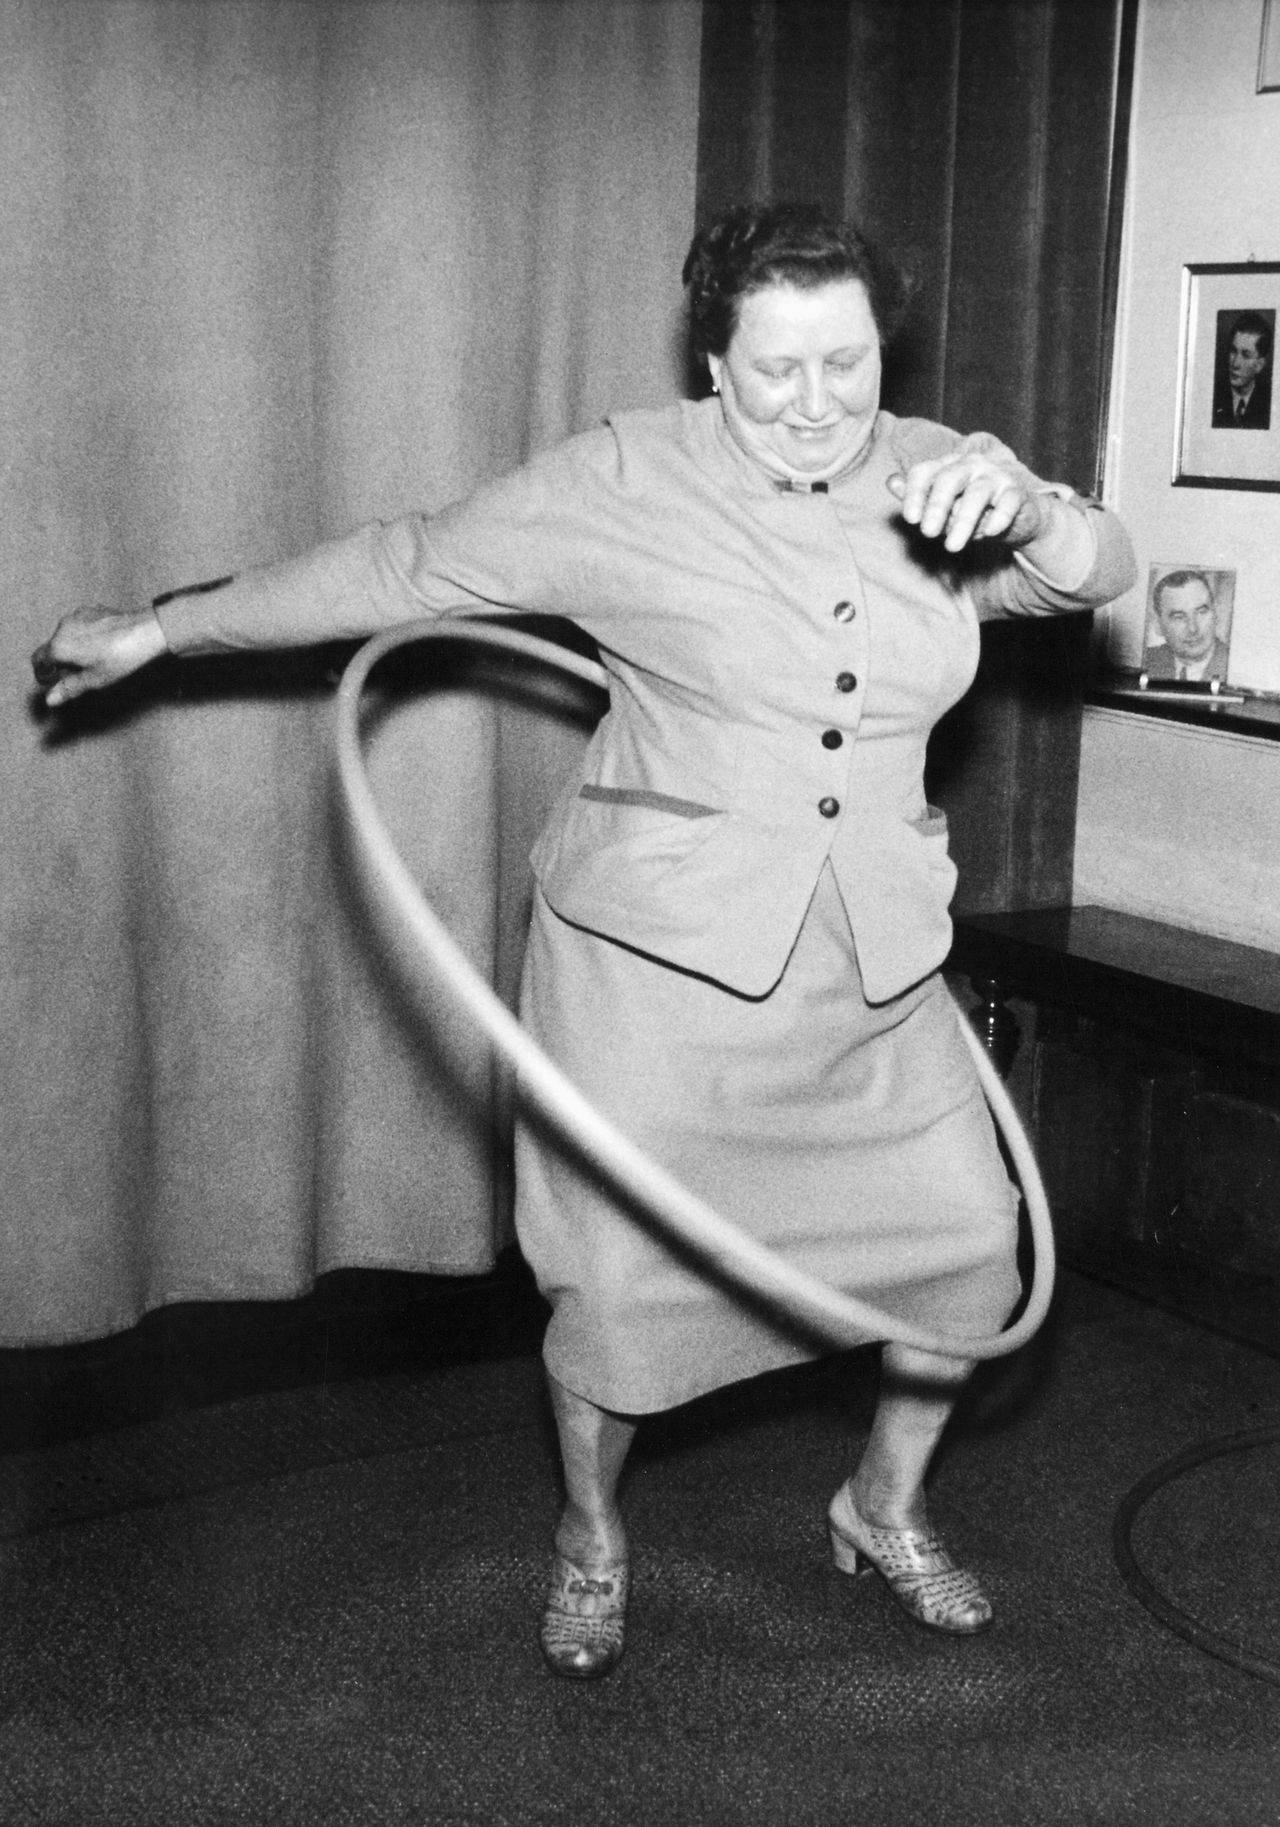 A European woman tries out a toy hoop, circa 1958.